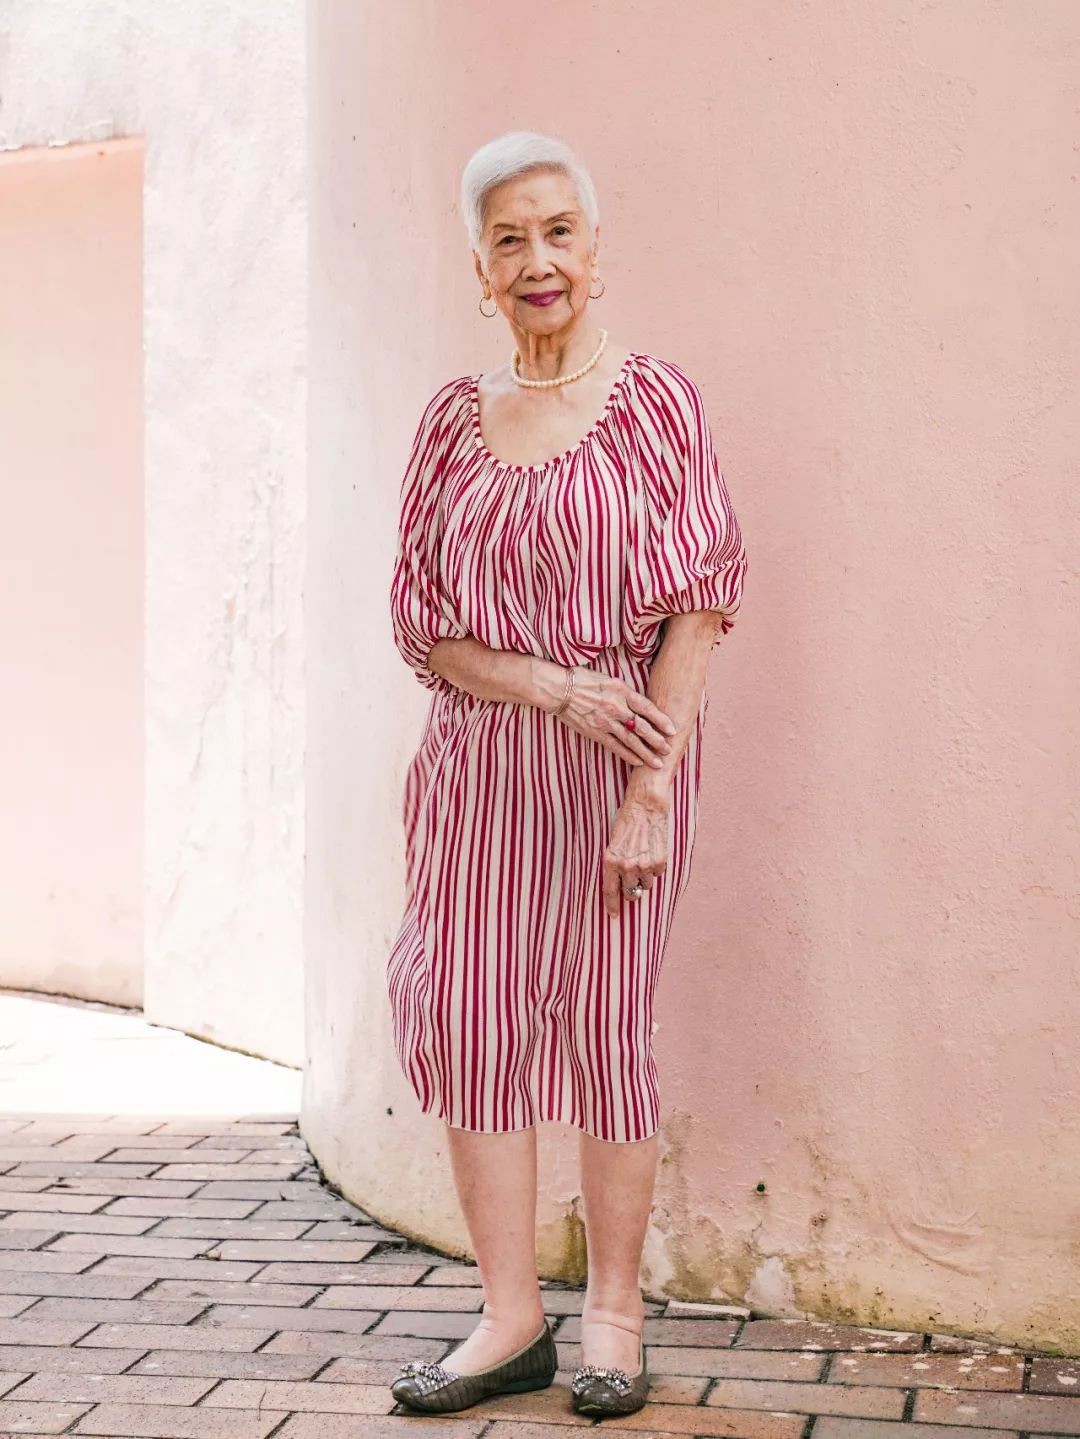 “Bà ngoại gân&quot; nhất Hong Kong: 96 tuổi trở thành người mẫu nổi tiếng được nhiều thương hiệu săn đón và cách sống “hãy là chính mình” đáng học hỏi - Ảnh 12.